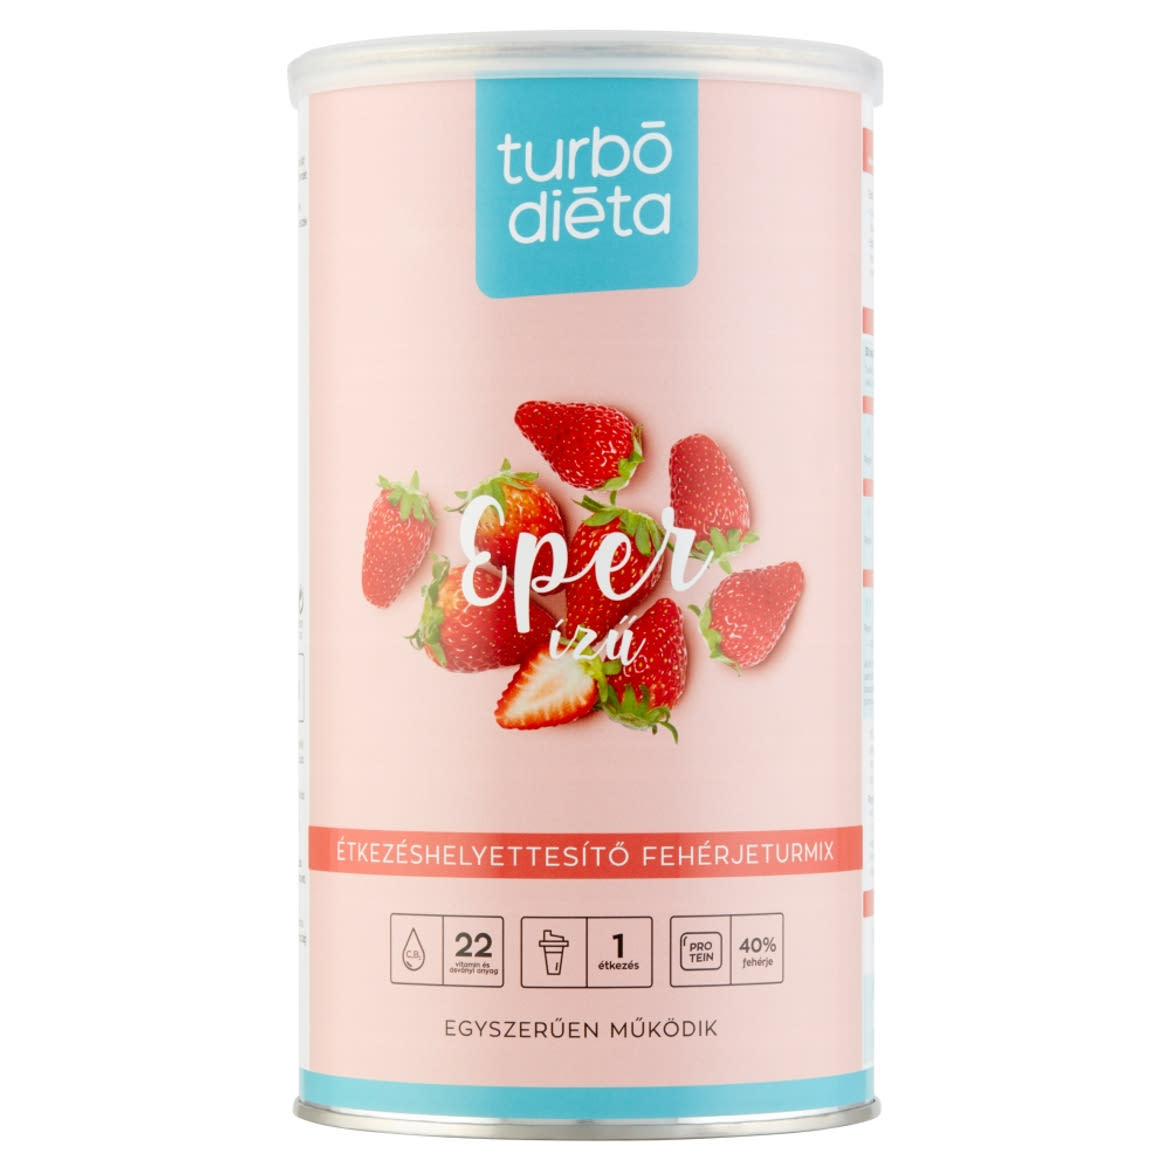 Turbó Diéta eper ízű étkezéshelyettesítő fehérjeturmix